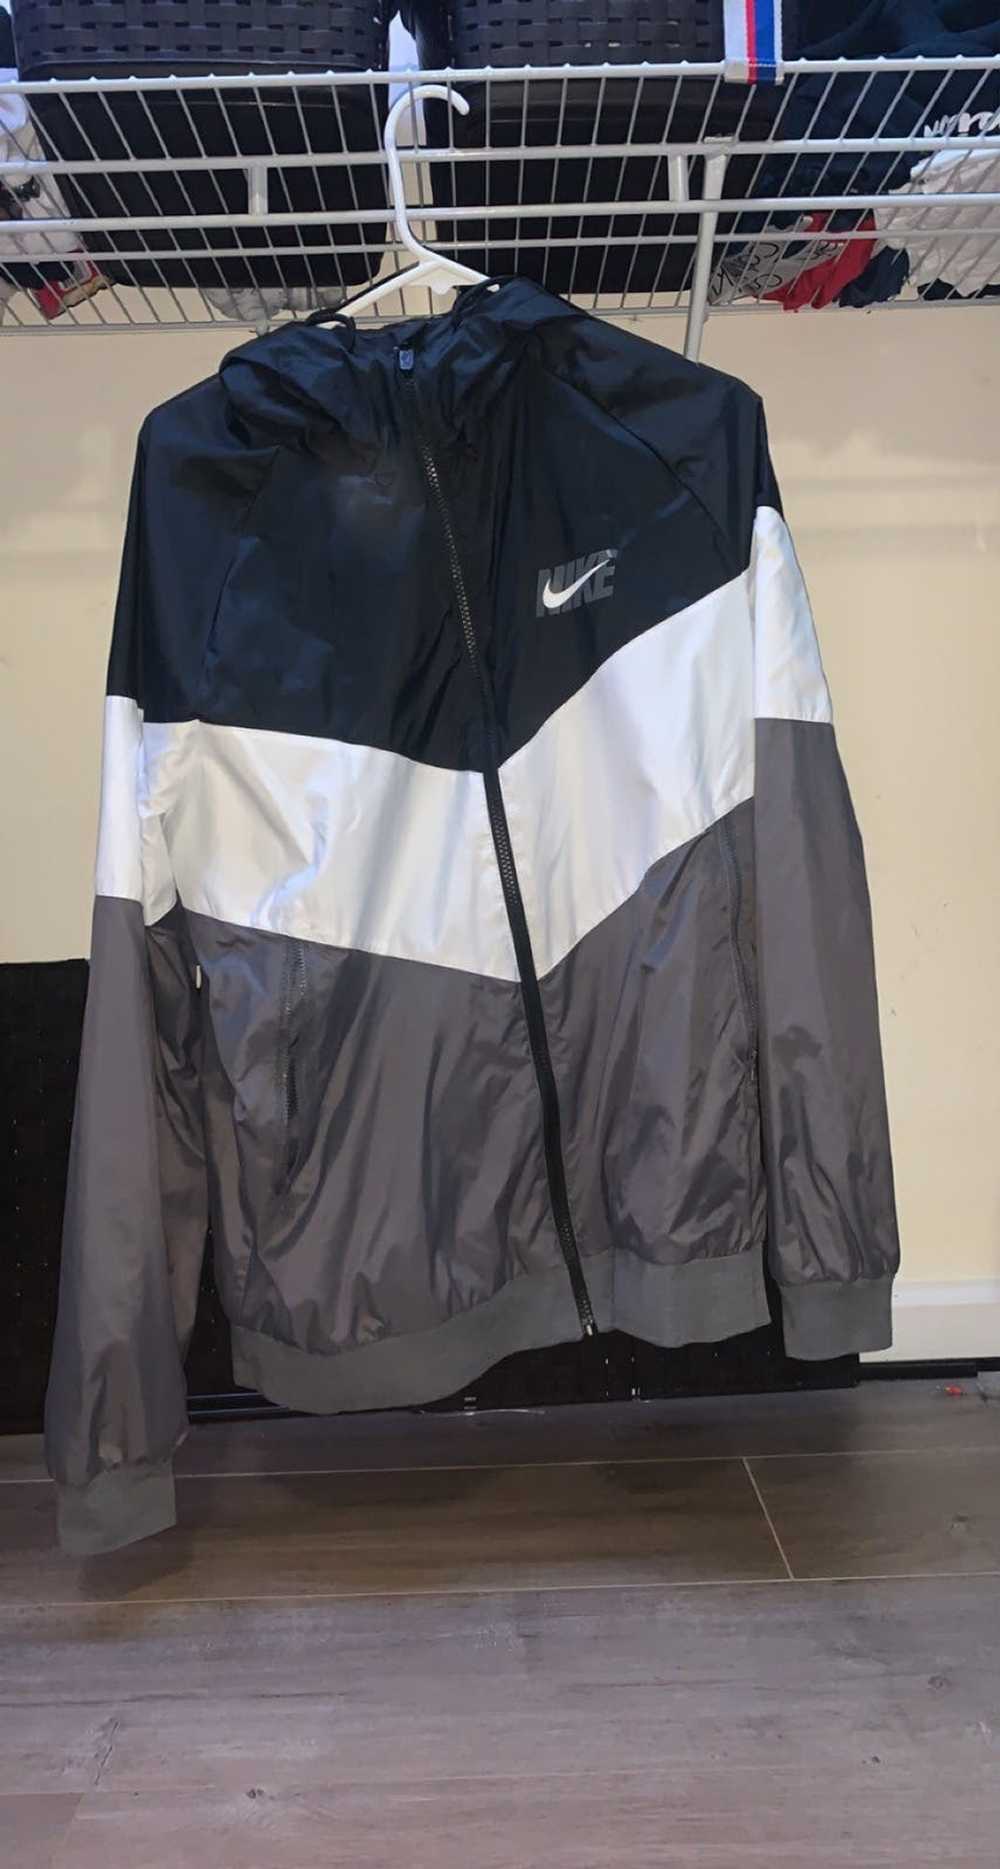 Nike Nike Rain Jacket - image 1